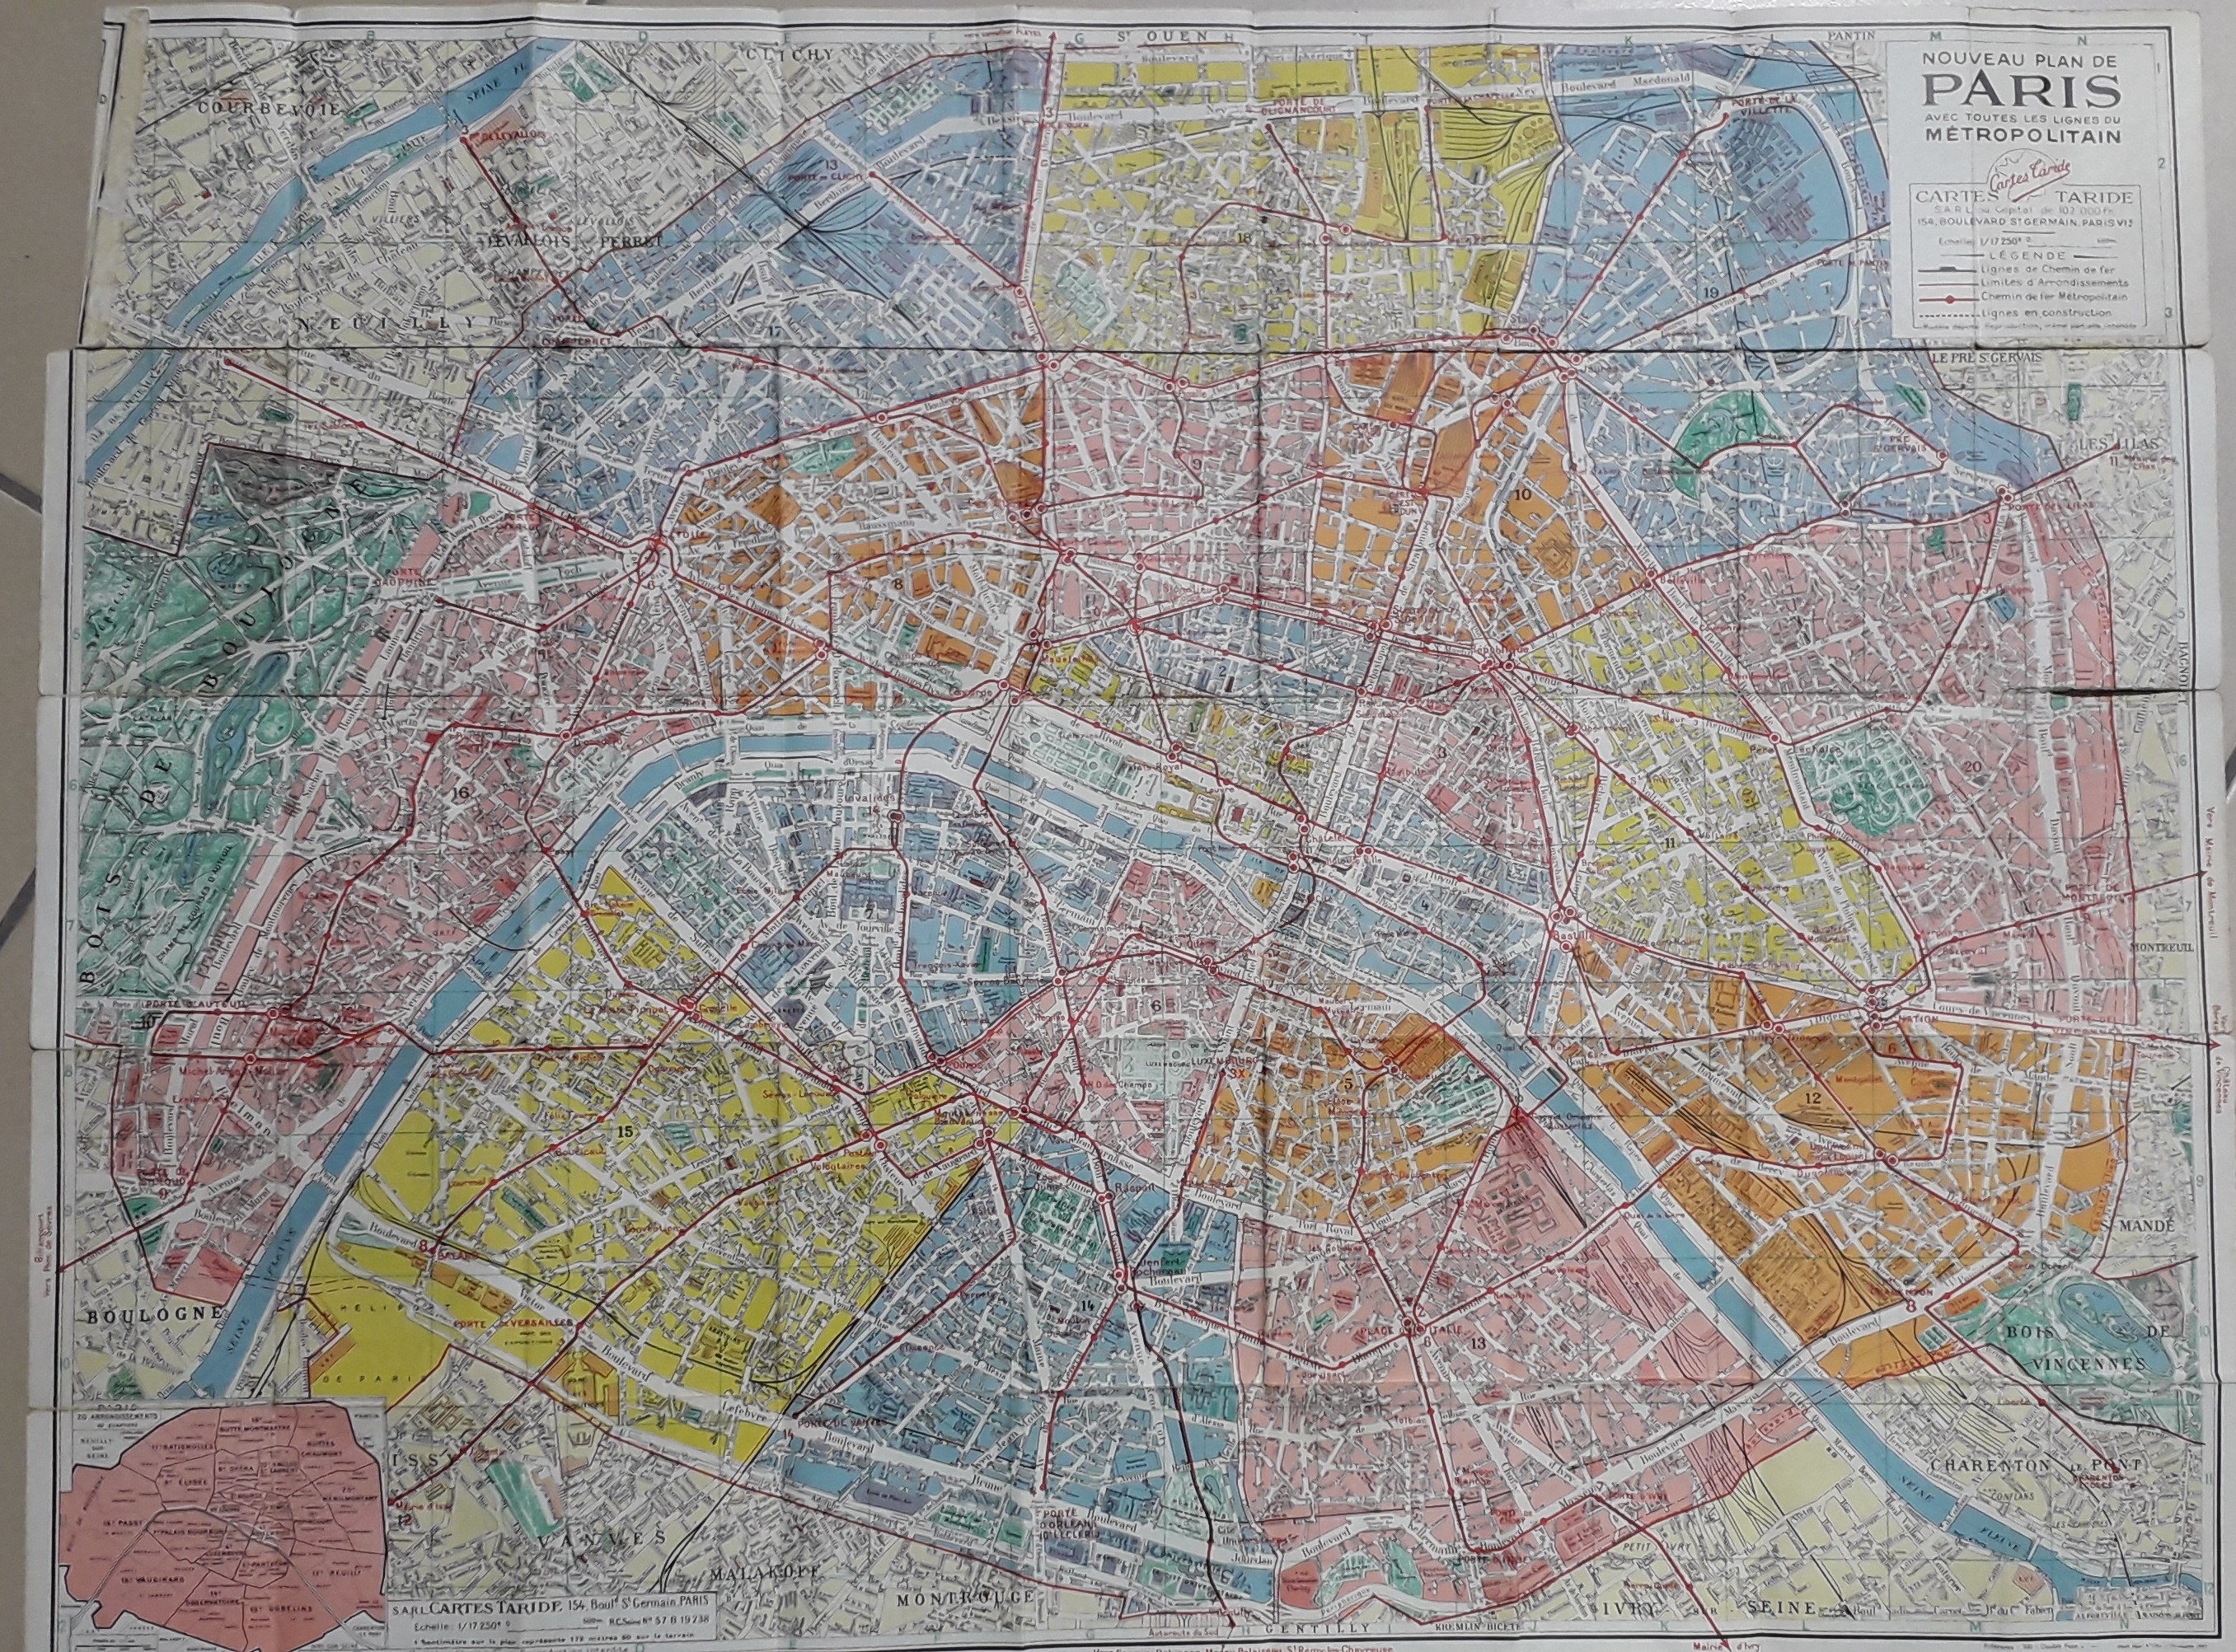 Carte Taride : Nouveau plan de Paris avec toutes les lignes du Mtropolitain (1/17250) / Banlieue parisienne (1/50000)